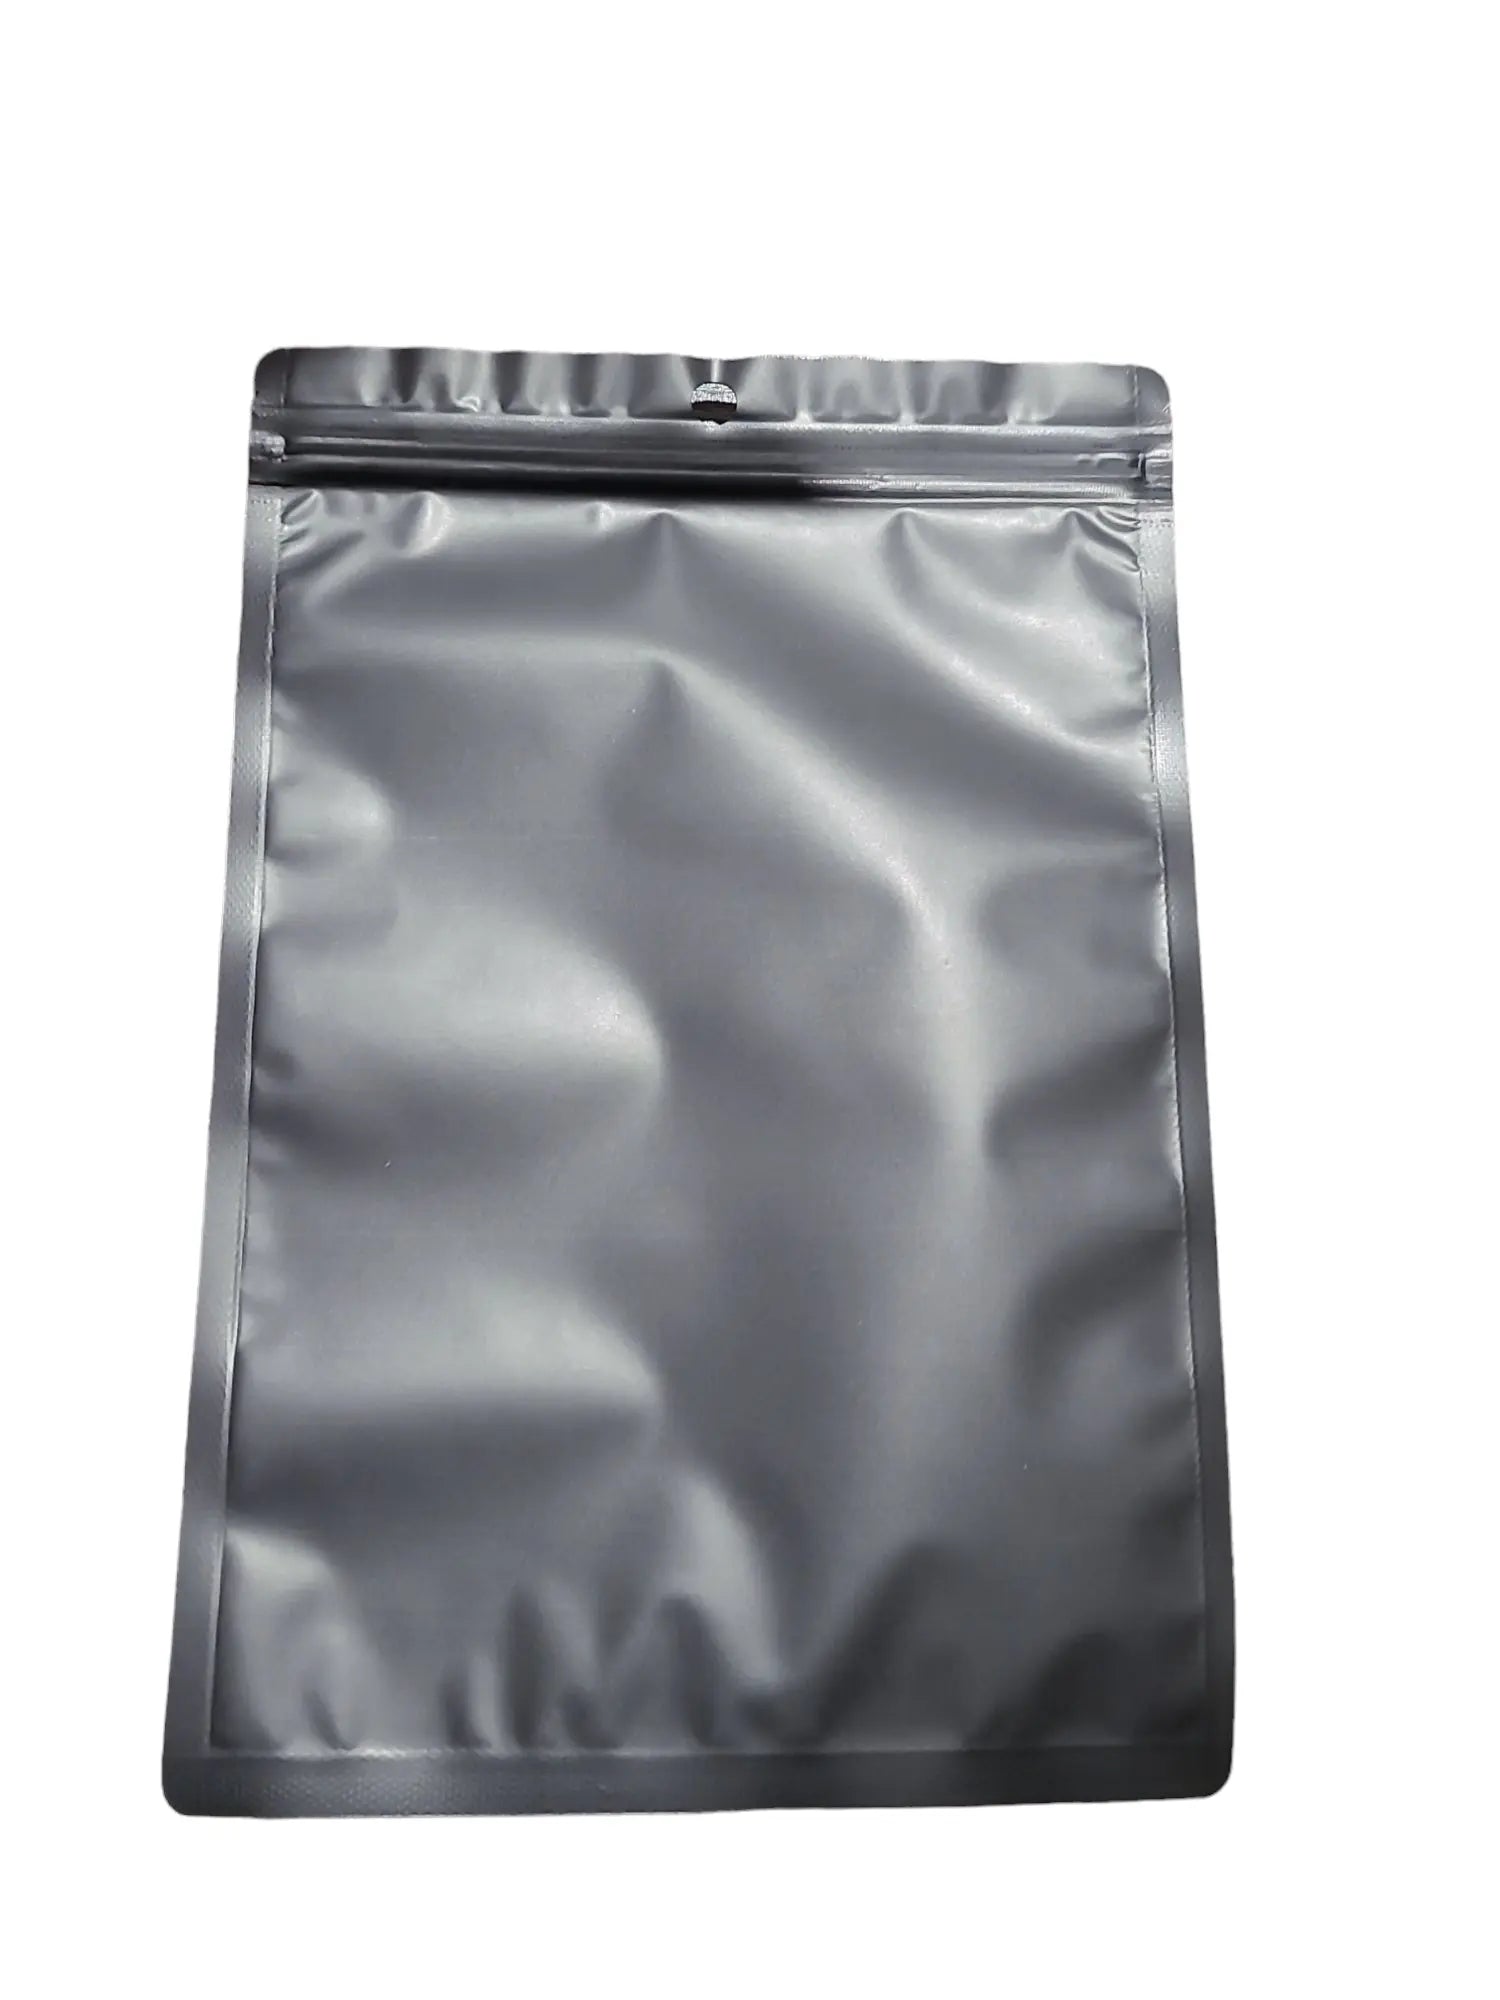 Mylar Bag - 1 Oz (1ct) Black/Clear Window - Viking Lab Supply